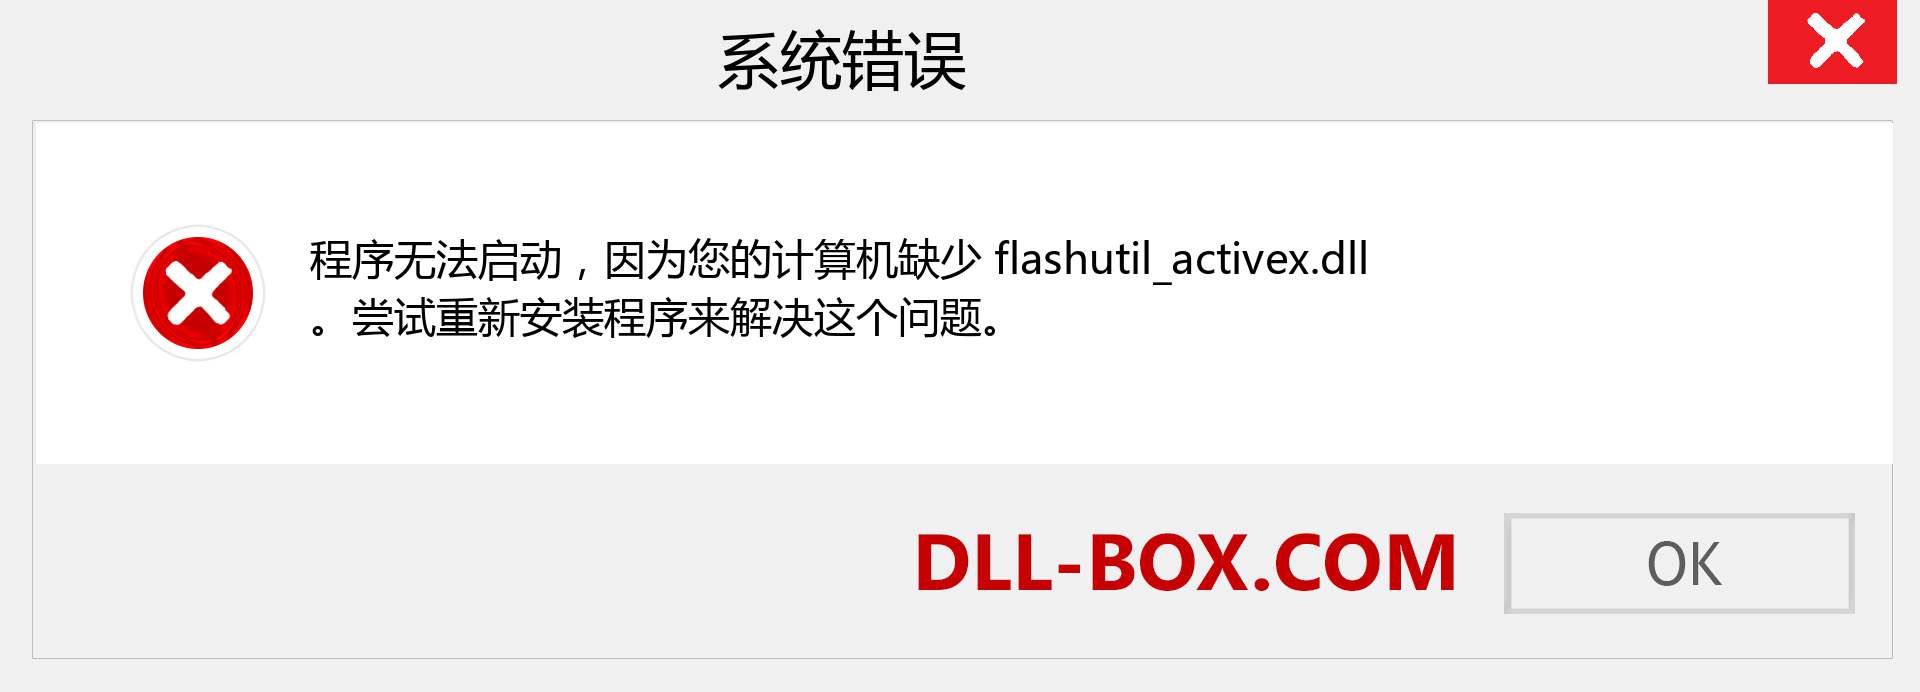 flashutil_activex.dll 文件丢失？。 适用于 Windows 7、8、10 的下载 - 修复 Windows、照片、图像上的 flashutil_activex dll 丢失错误